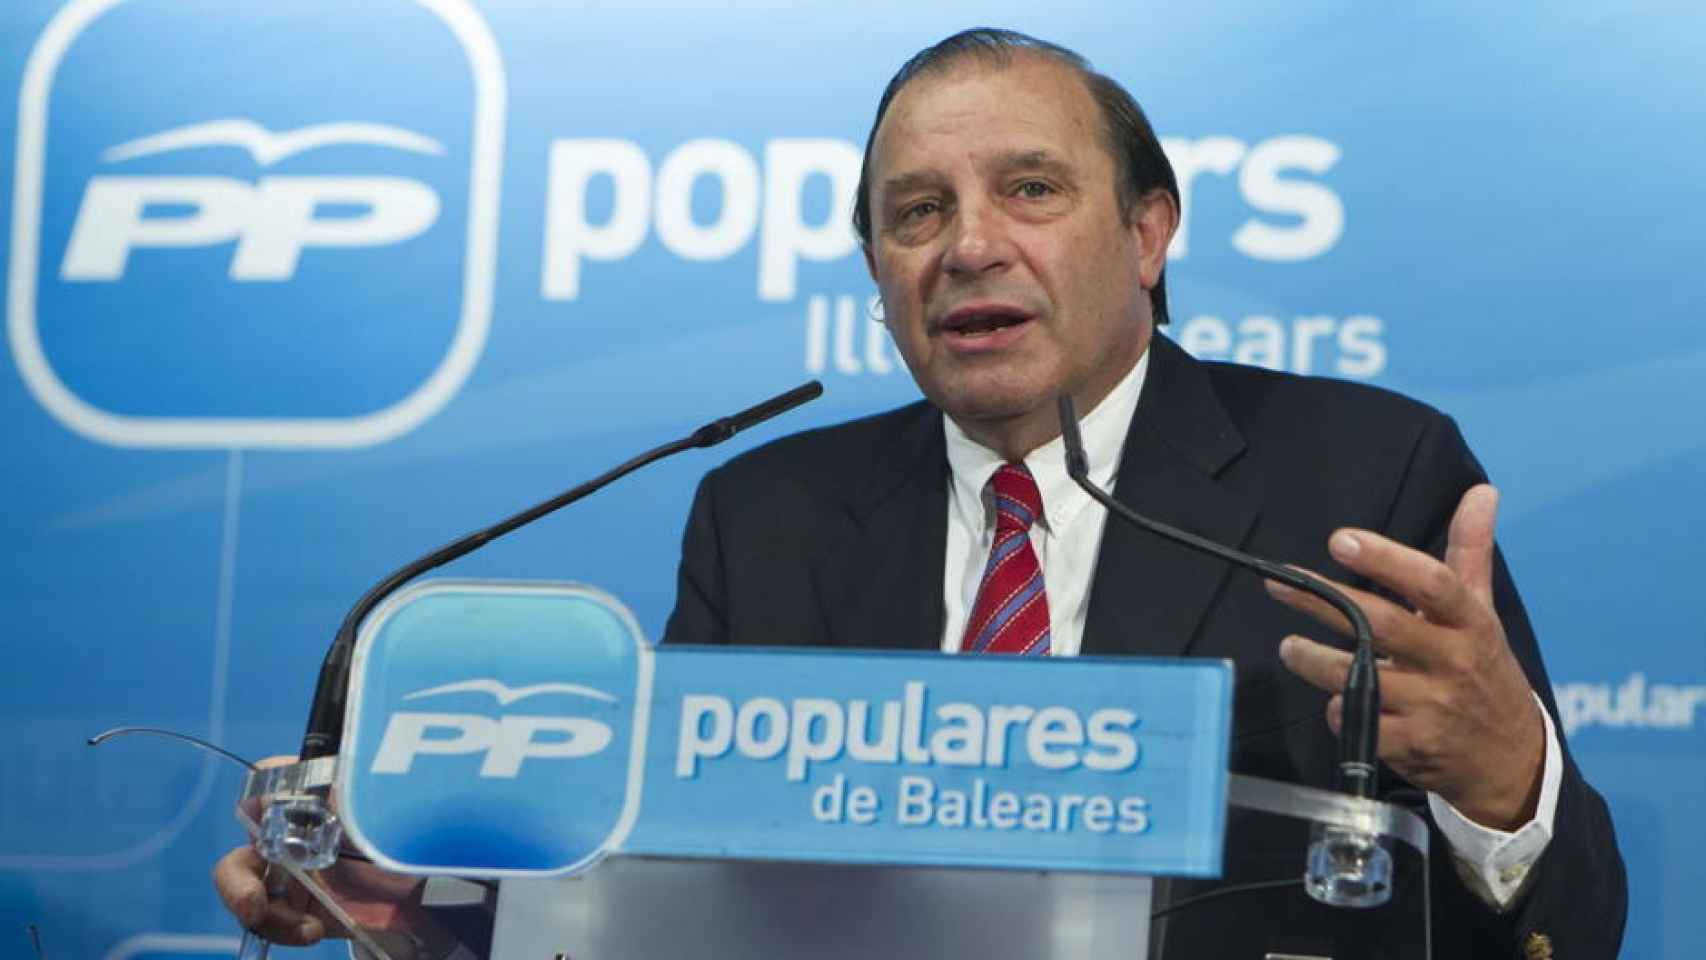 El exdiputado del PP Vicente Martínez Pujalte